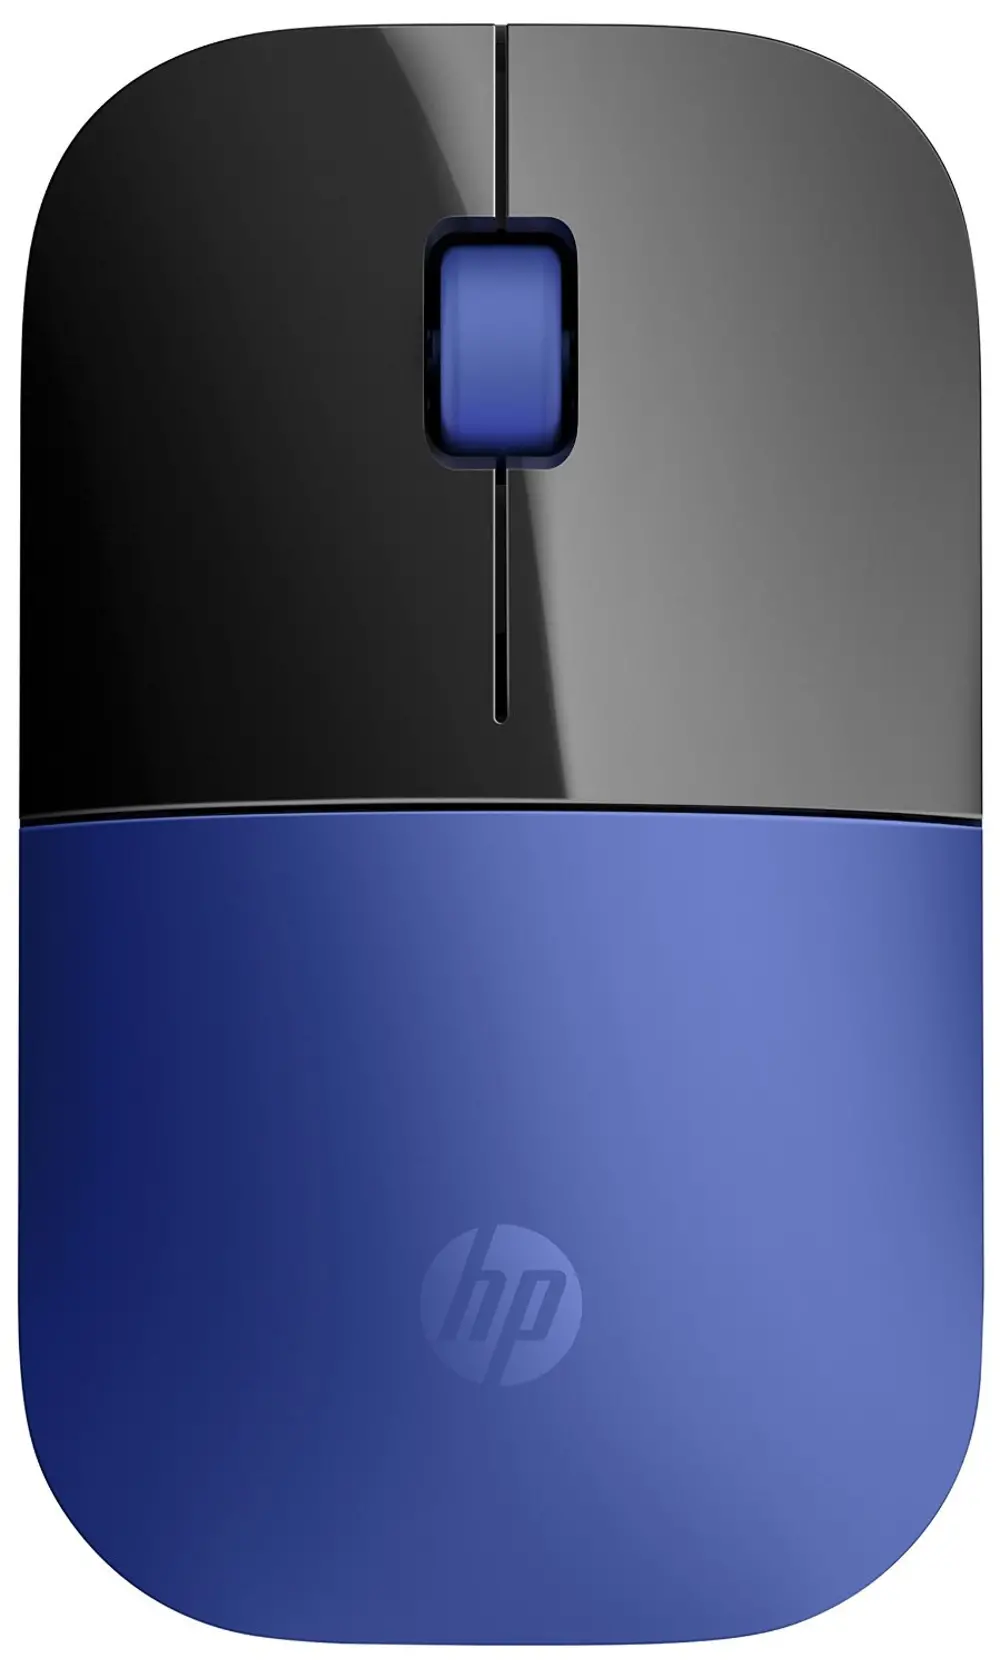 HP-Z3700,MOUSE,BLUE HP Wireless Mouse Z3700 - Blue-1